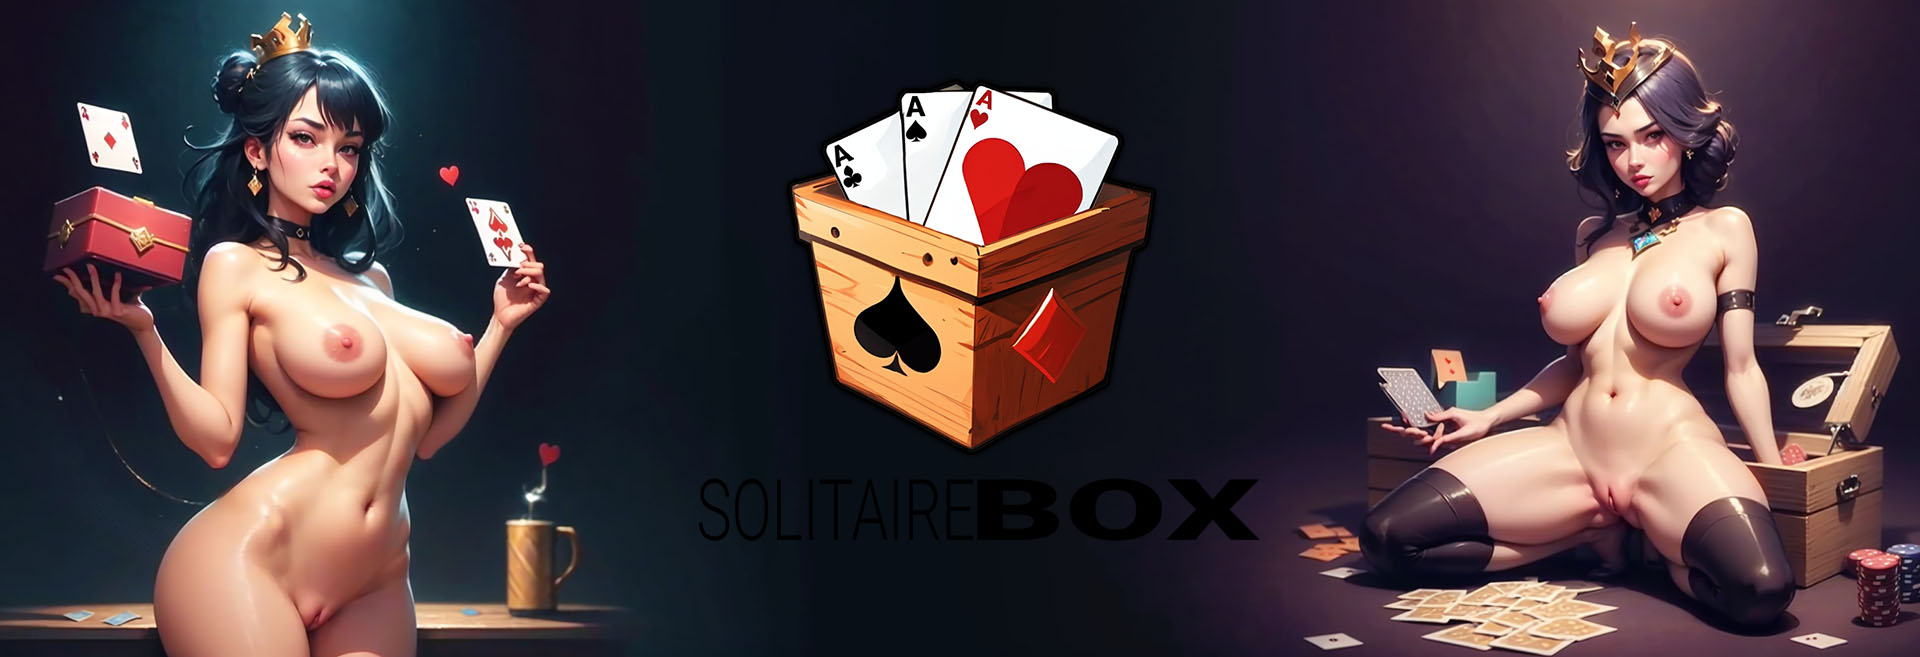 Solitaire Box